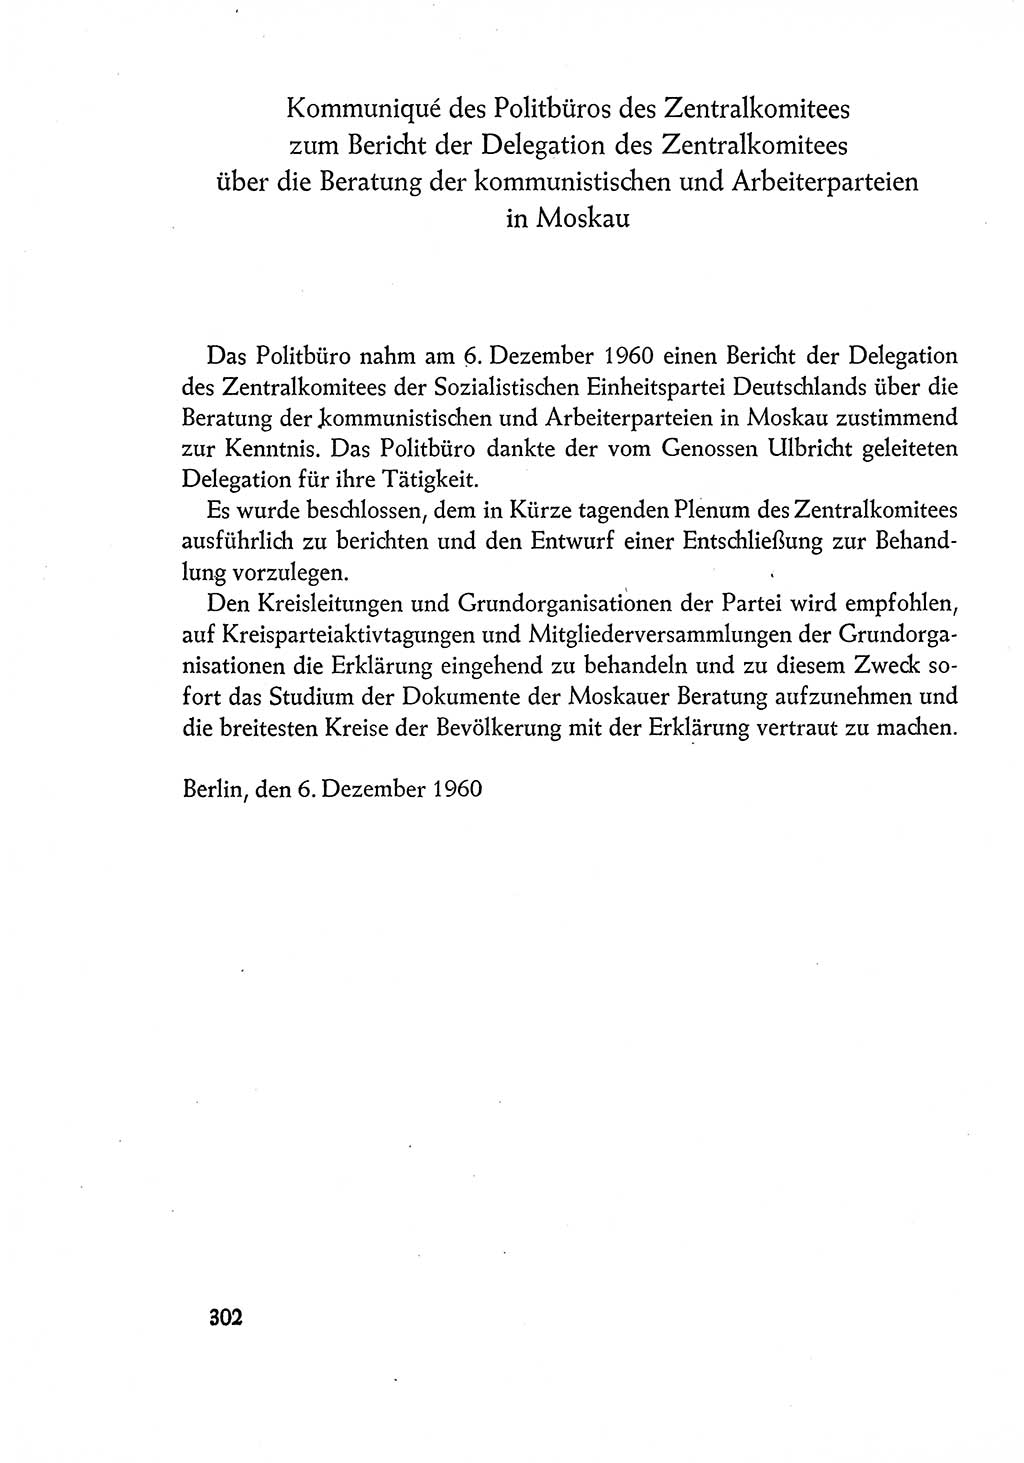 Dokumente der Sozialistischen Einheitspartei Deutschlands (SED) [Deutsche Demokratische Republik (DDR)] 1960-1961, Seite 302 (Dok. SED DDR 1960-1961, S. 302)